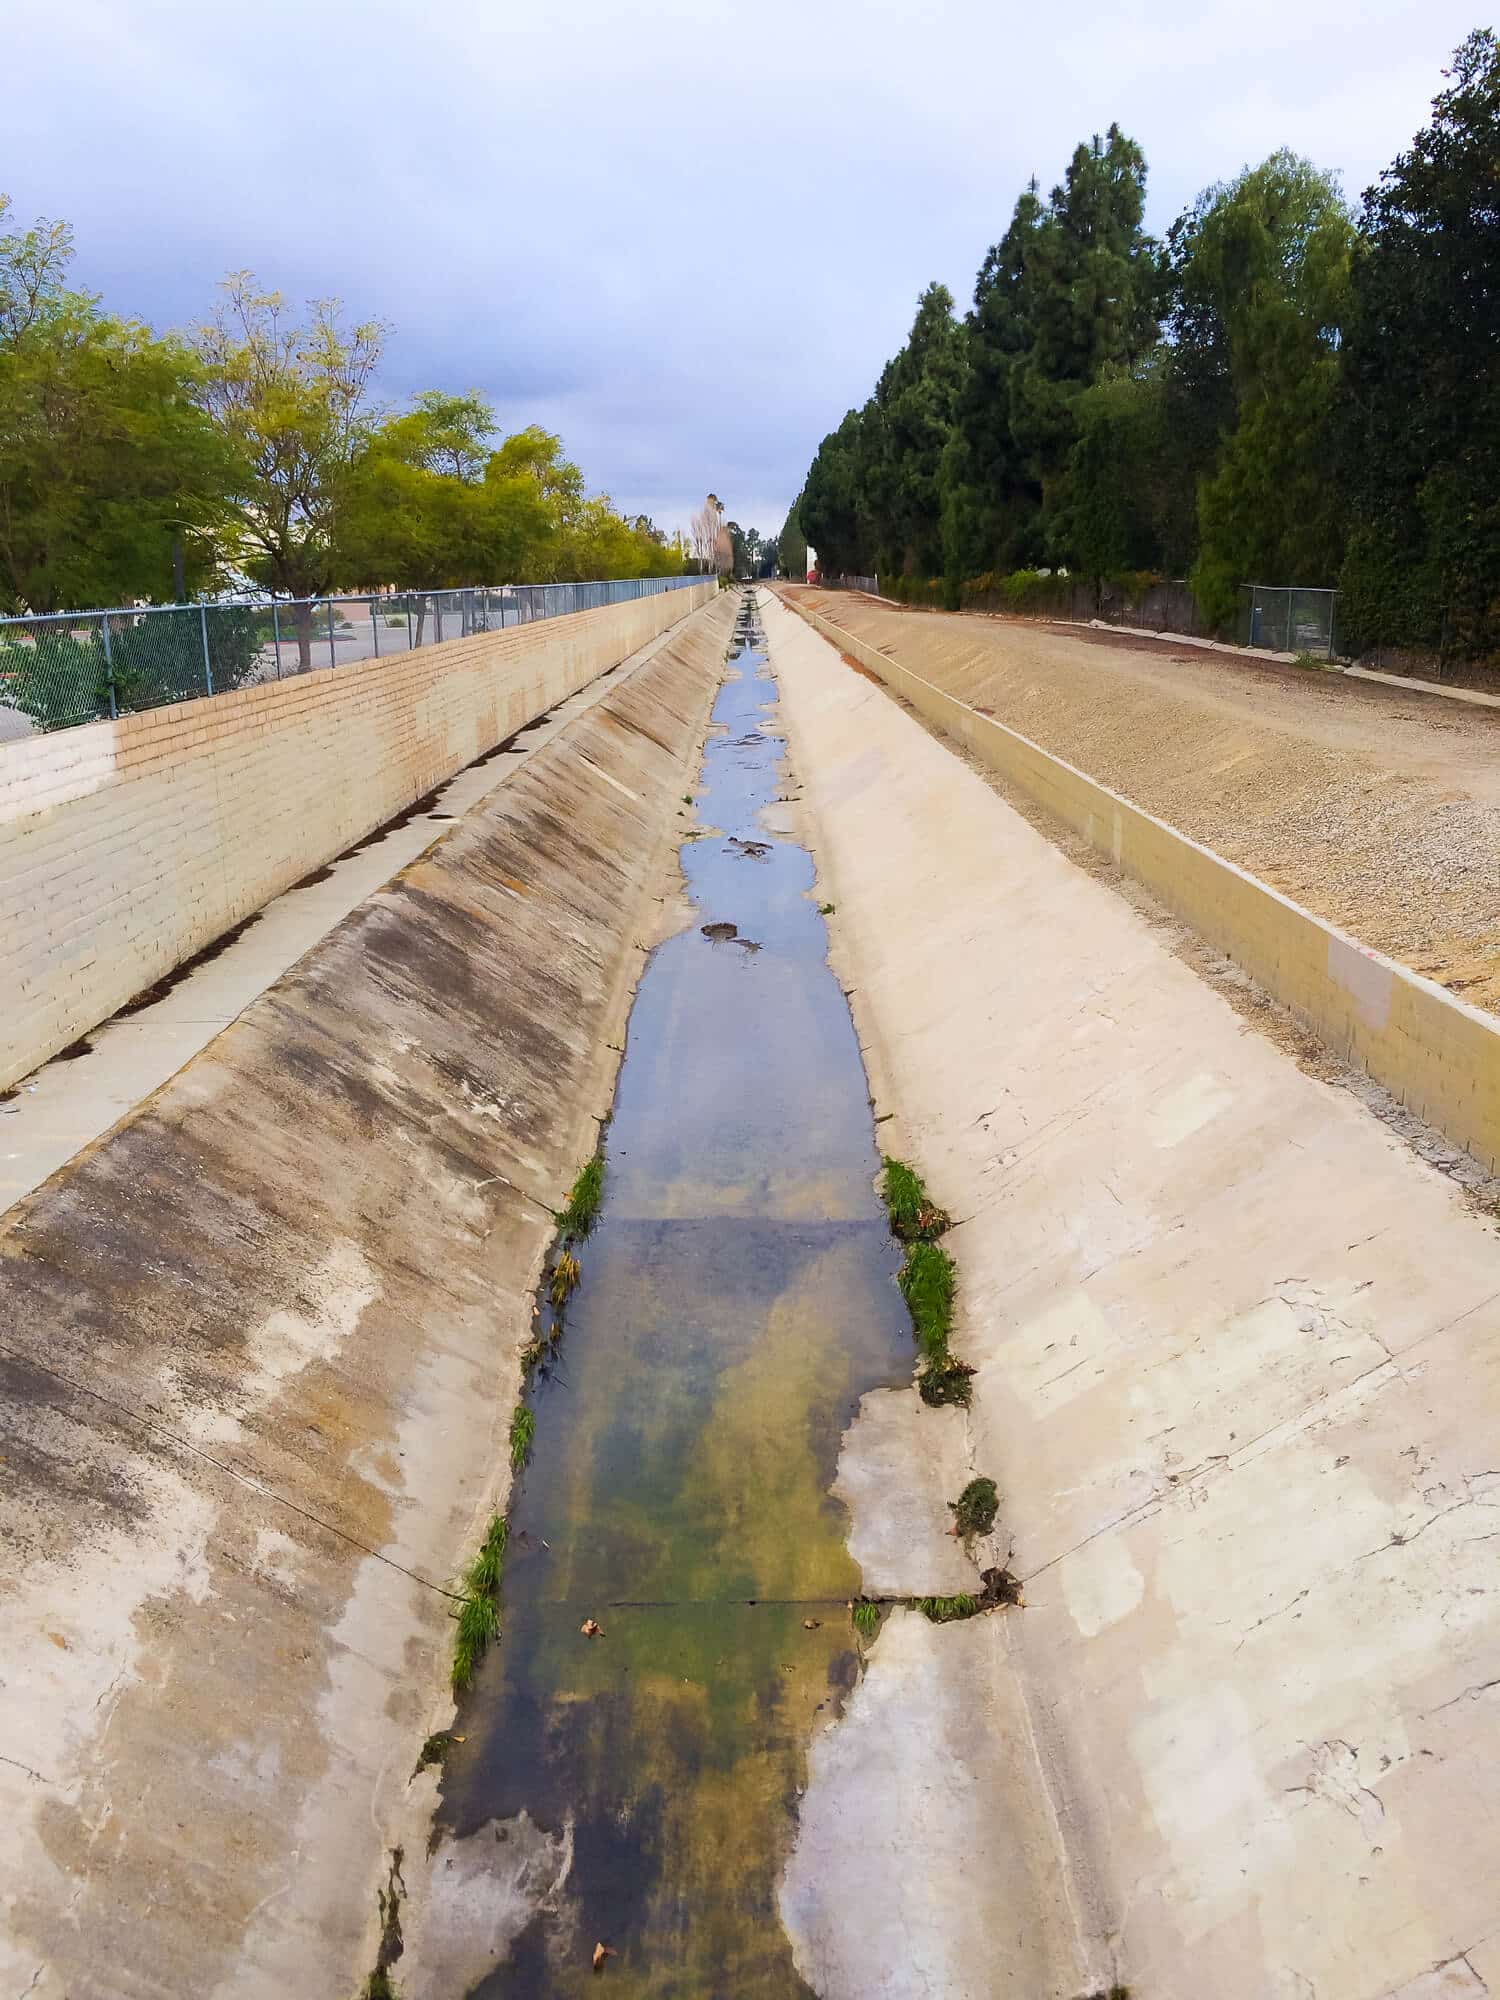 תעלת מים בקליפורניה שהתייבשה בשל בצורת ממושכת.  <a href="https://depositphotos.com. ">המחשה: depositphotos.com</a>